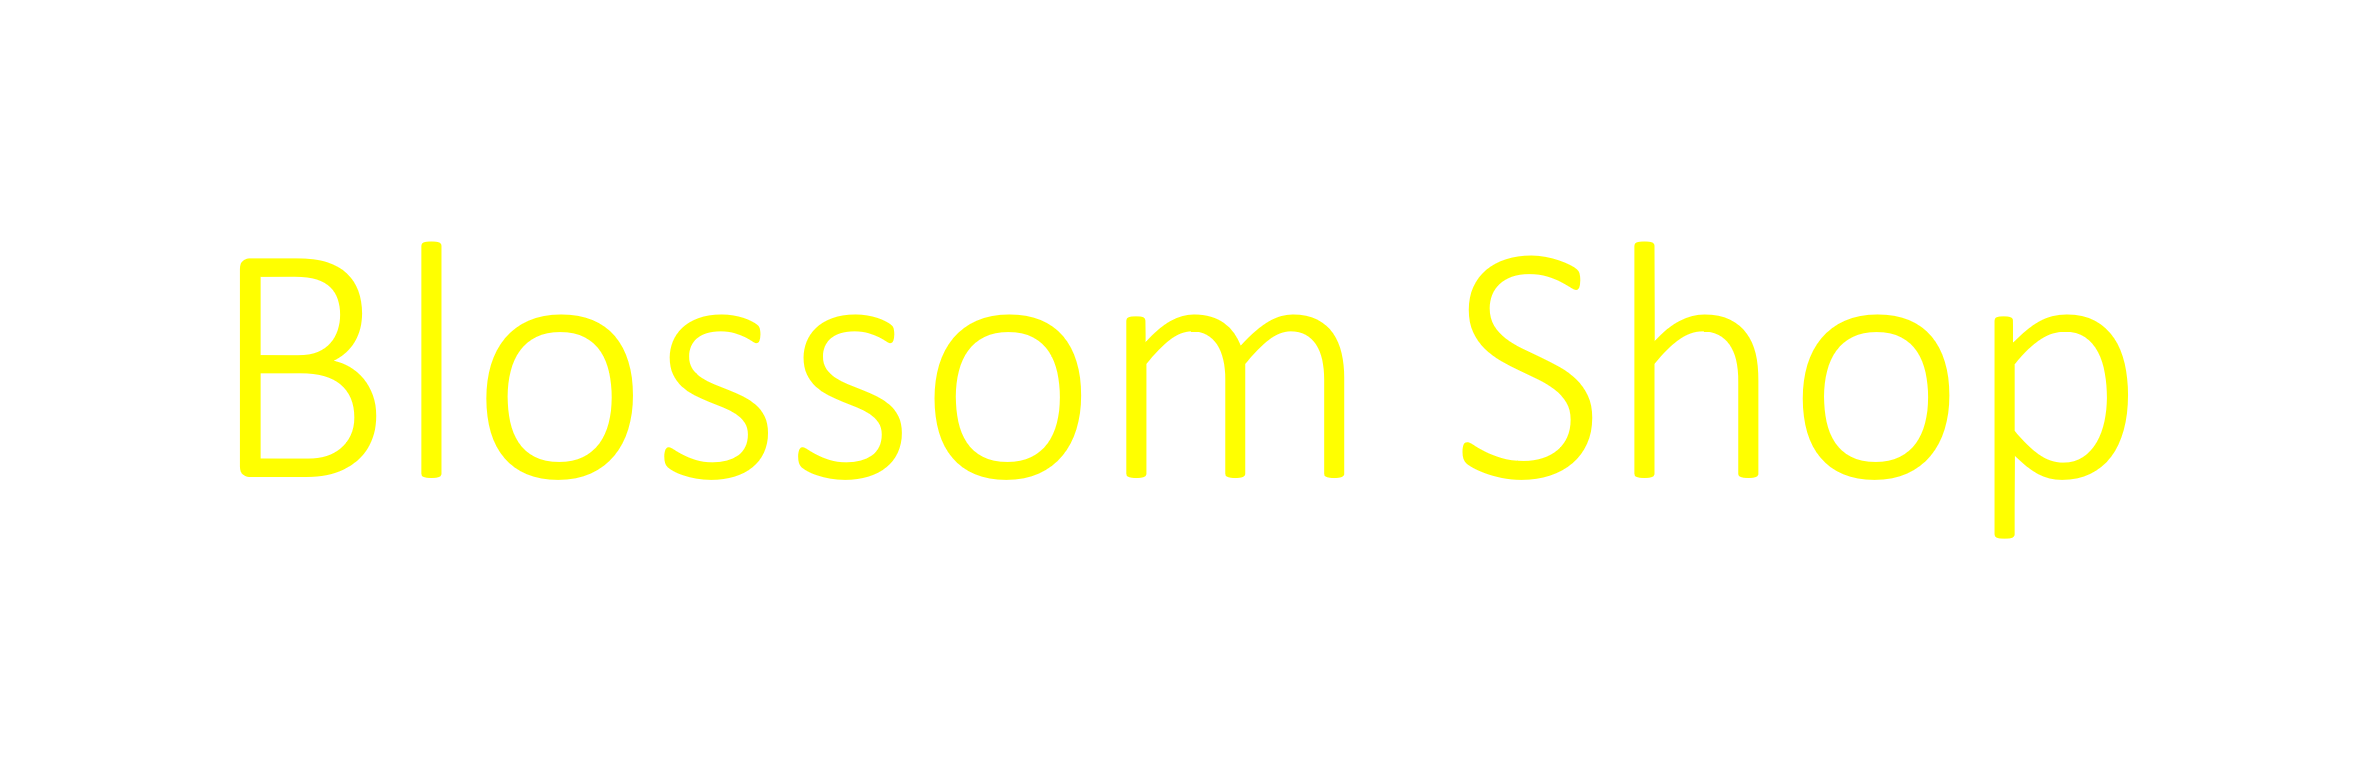 Blossom Shop - Logo